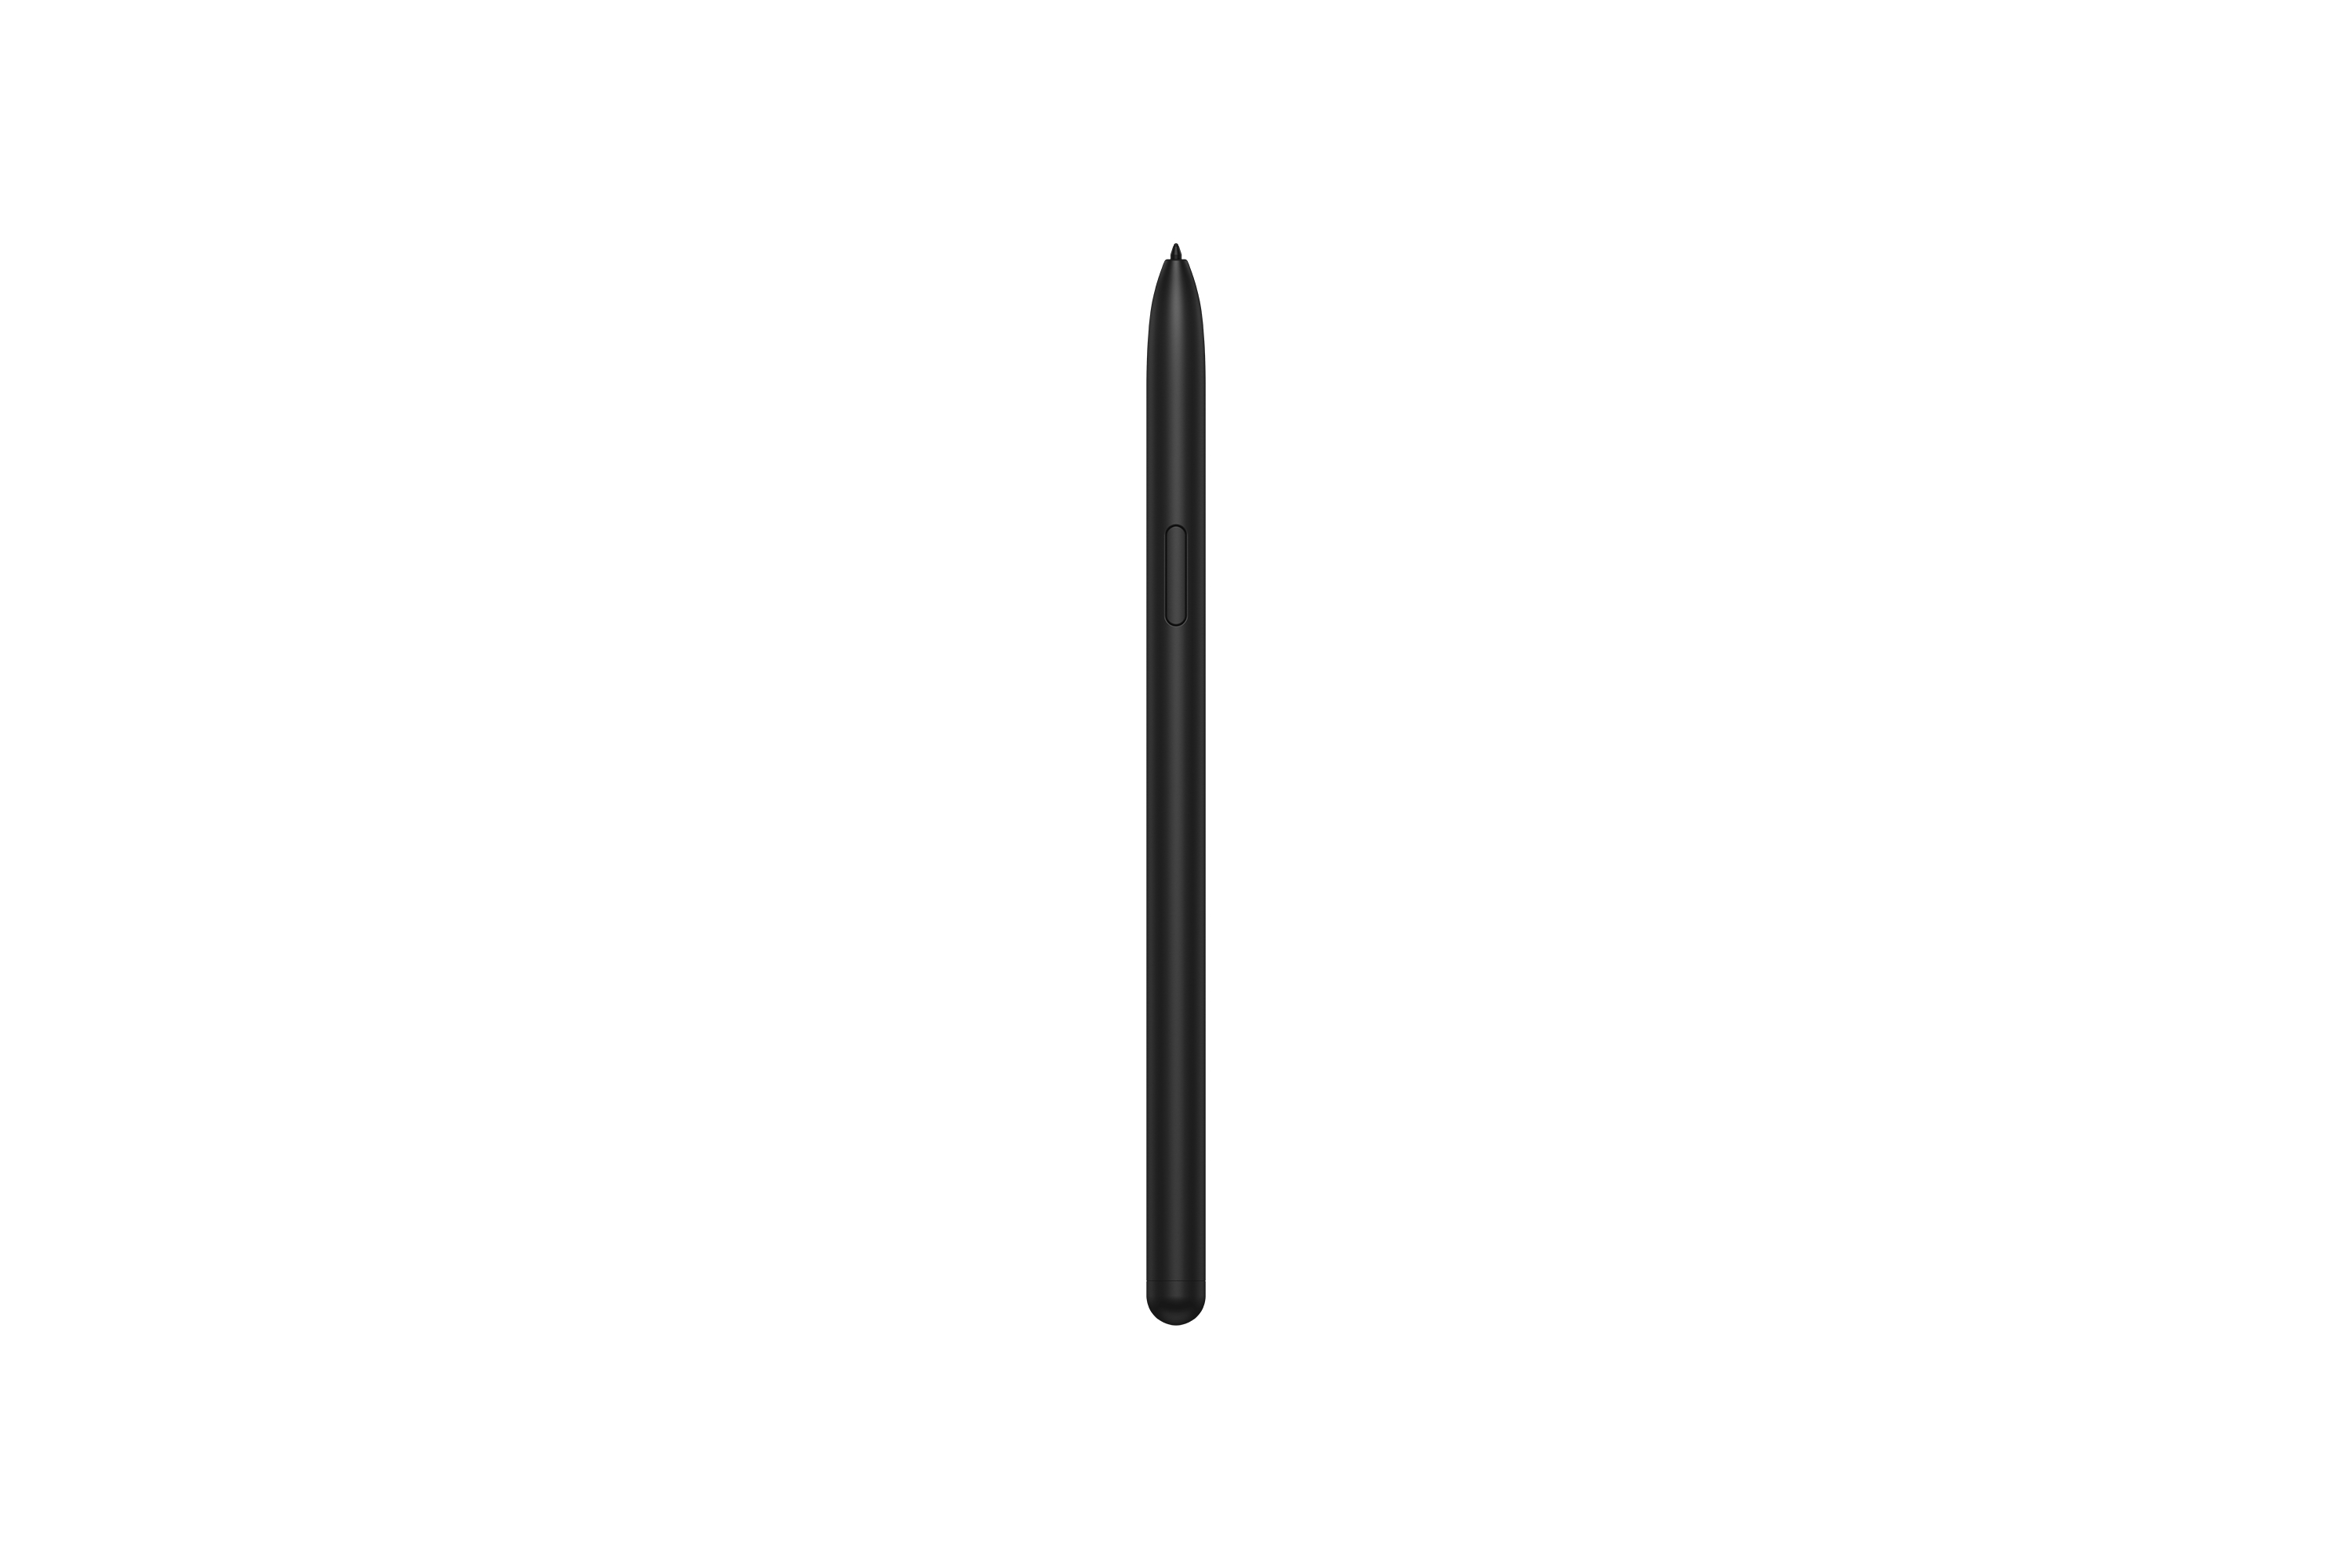 SAMSUNG Galaxy Tab S8 Wi-Fi, Zoll, S-Pen, inklusive Silver GB, 11 Tablet, 128